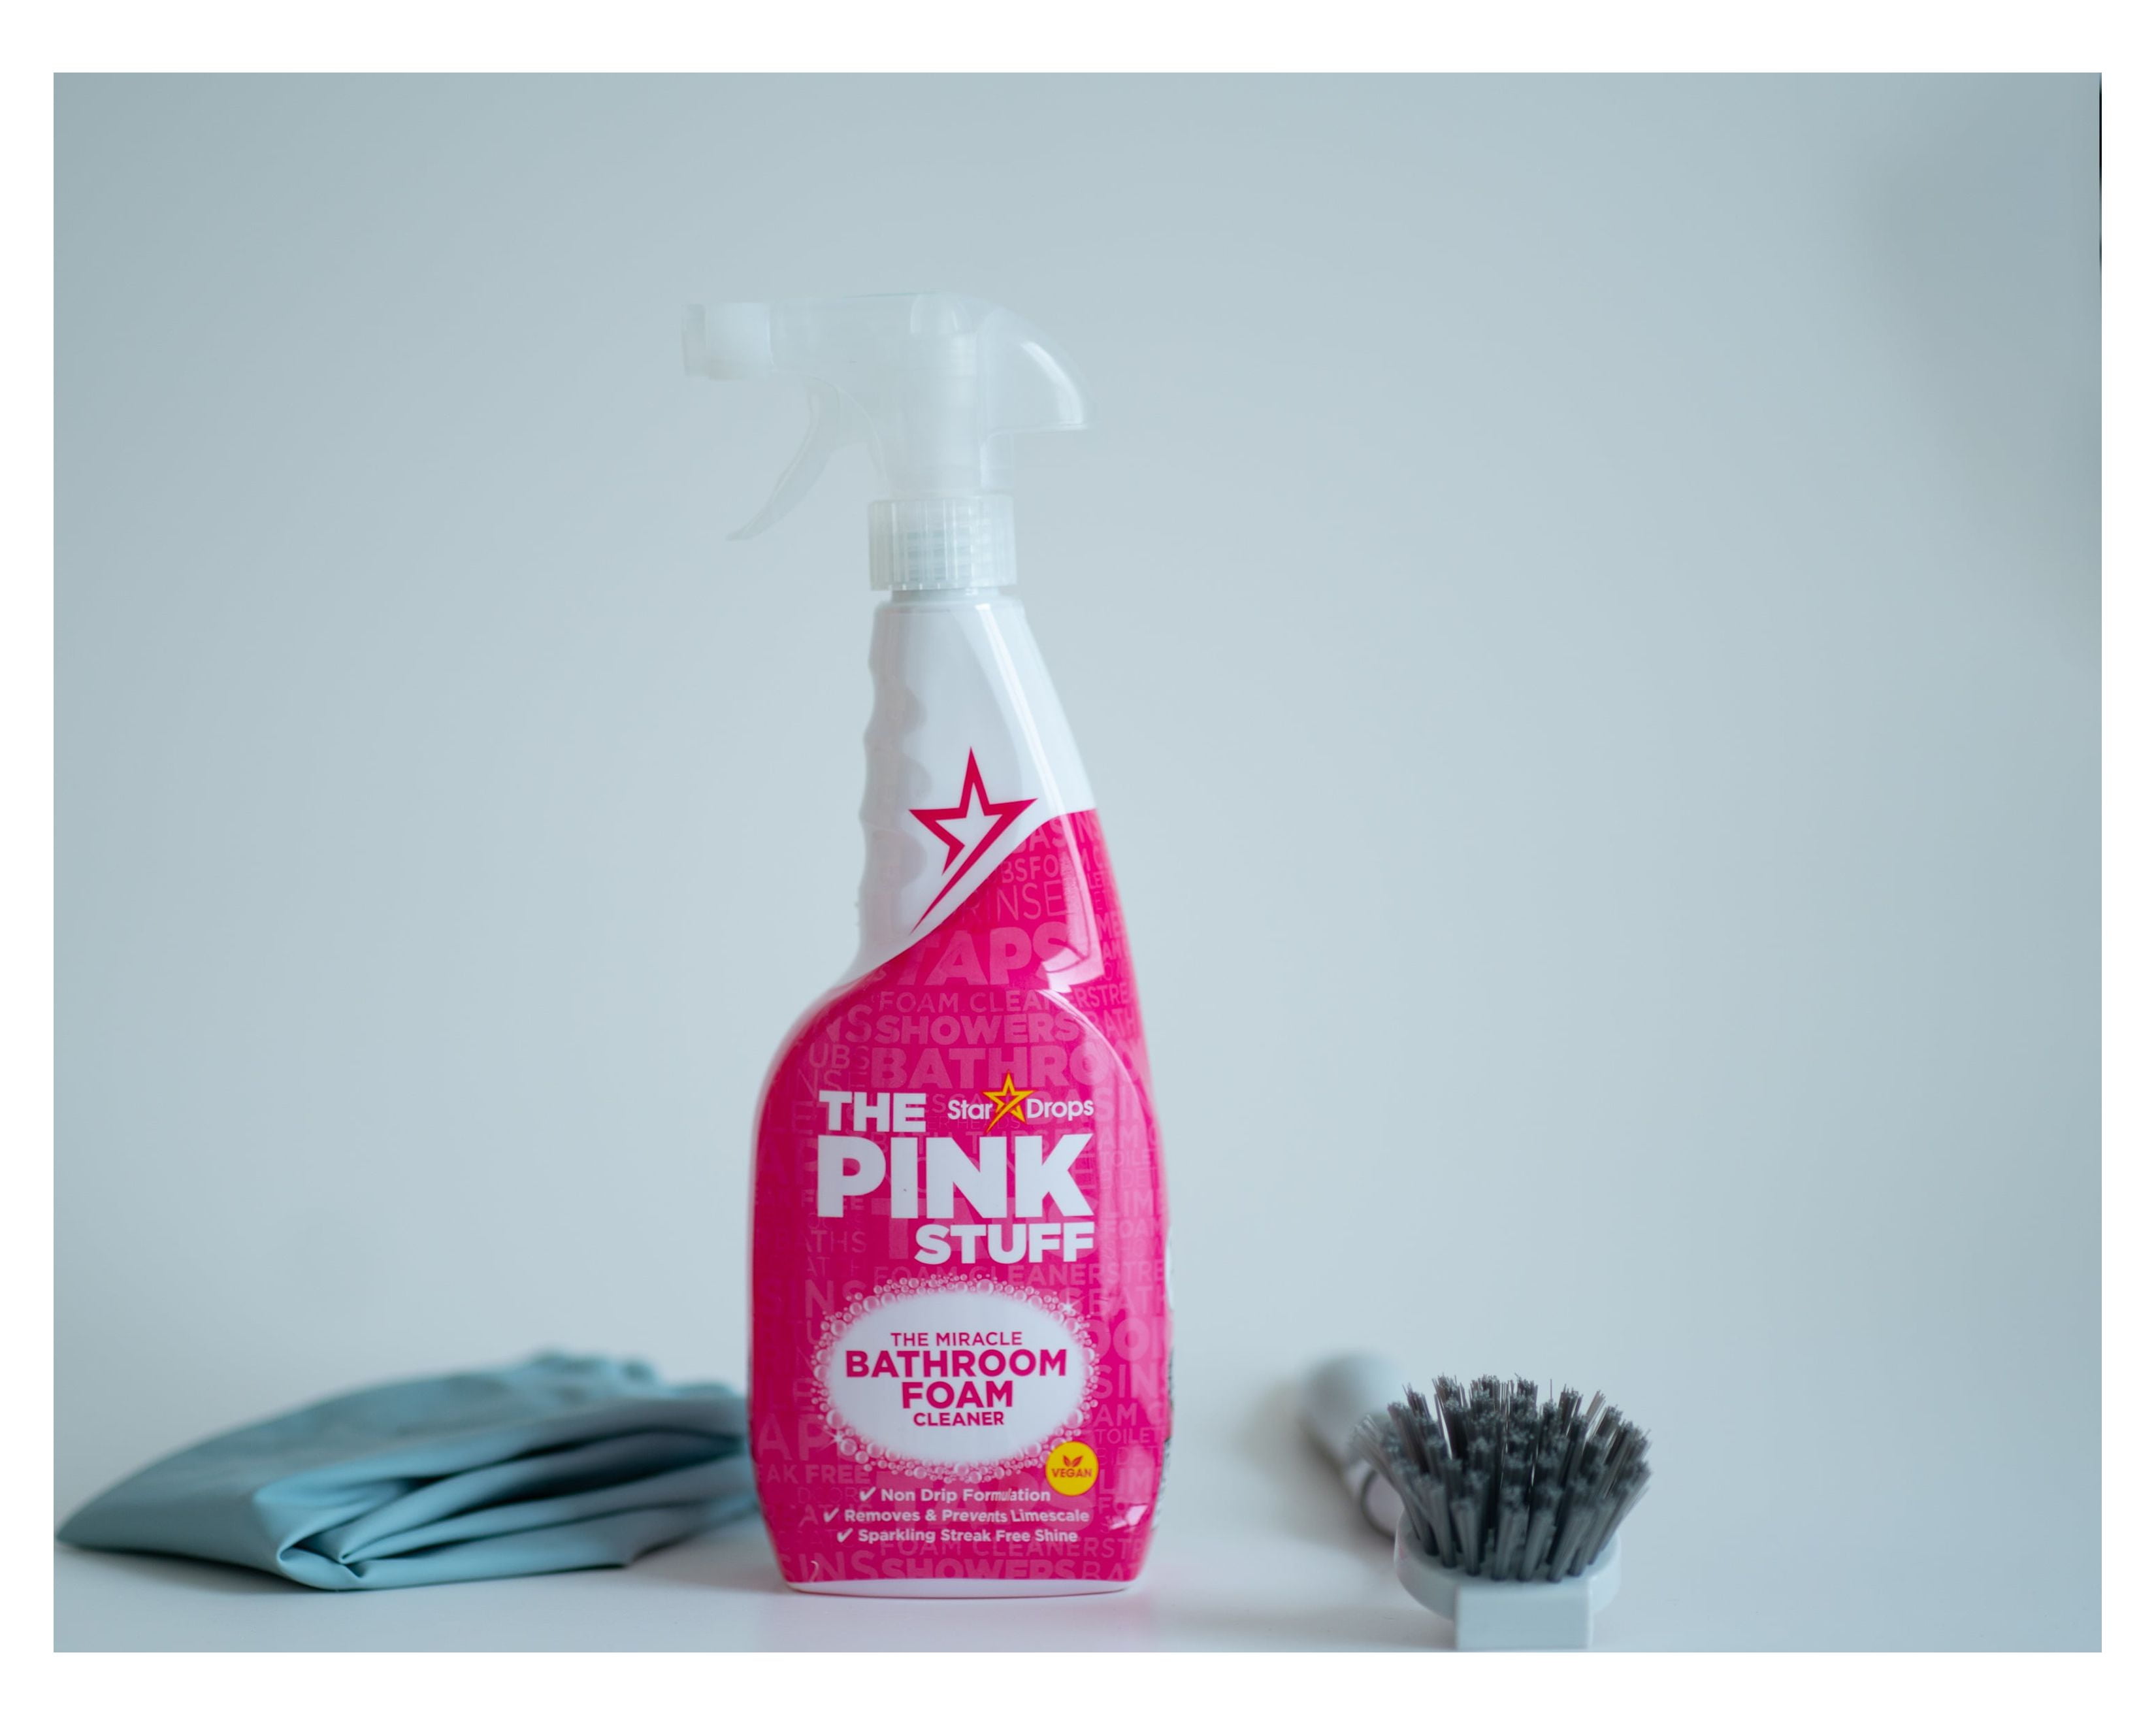 The Pink Stuff, Home & Bathroom Foam Cleaner, 25.36 fl. oz. 